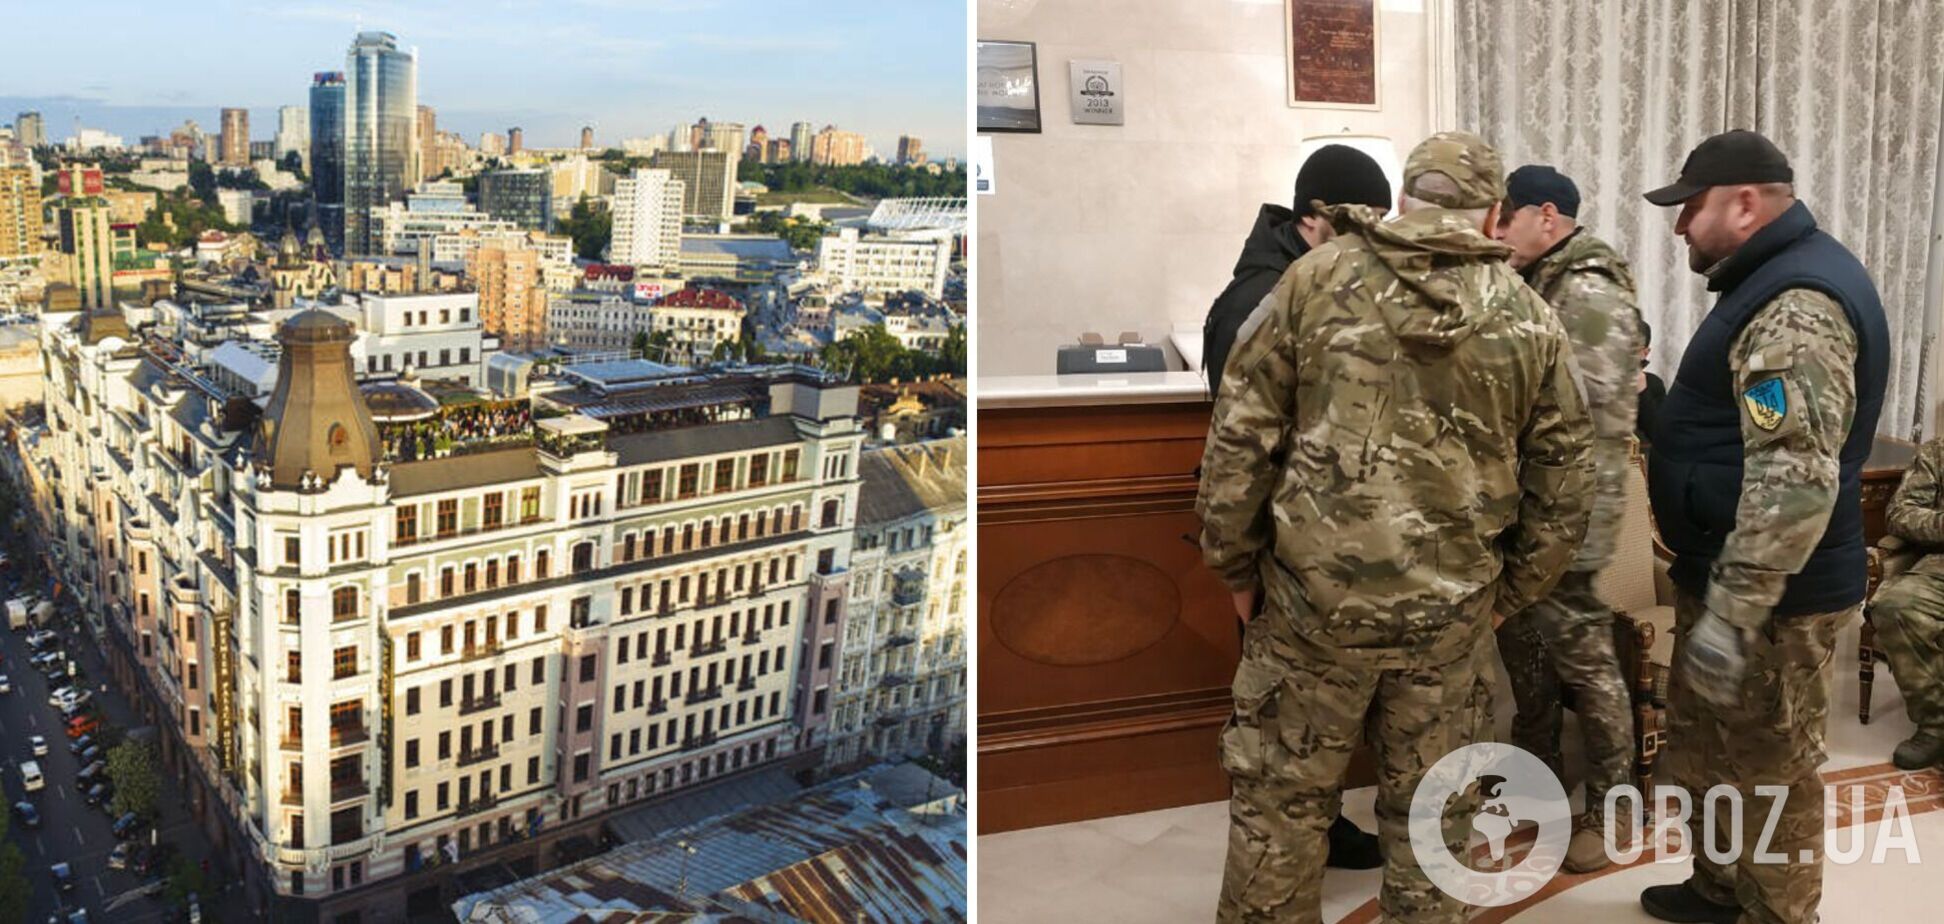 В гостинице Premier Palace в Киеве устроили акцию с требованием о национализации: владельцами назвали россиян. Фото и видео